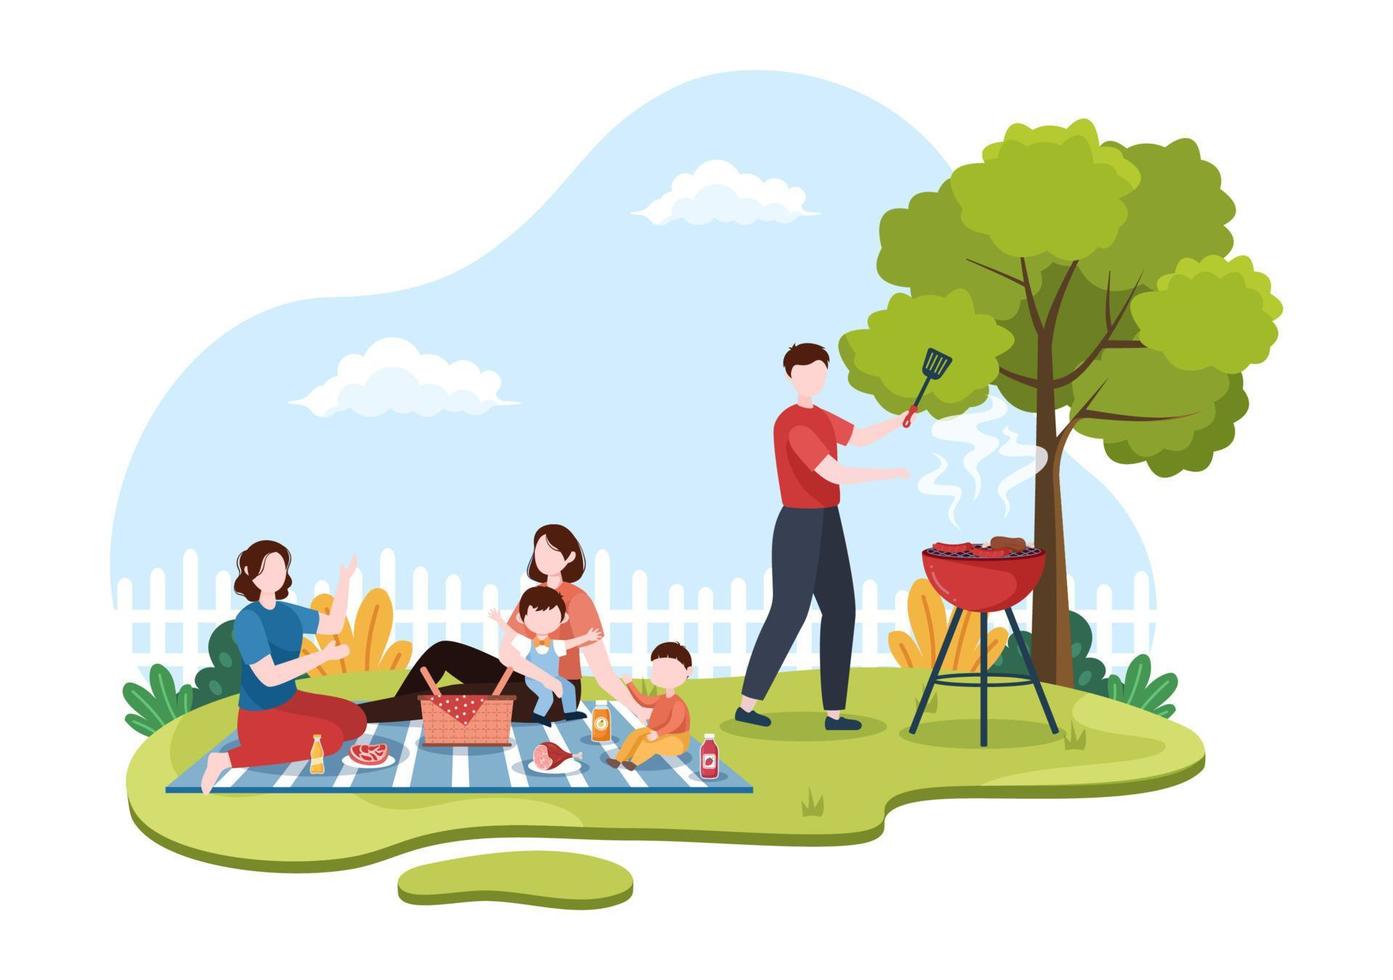 bbq eller grill med biffar på grillen, tallrikar, korv, kyckling, grönsaker och människor på picknick eller fest i parken i platt tecknad illustration vektor